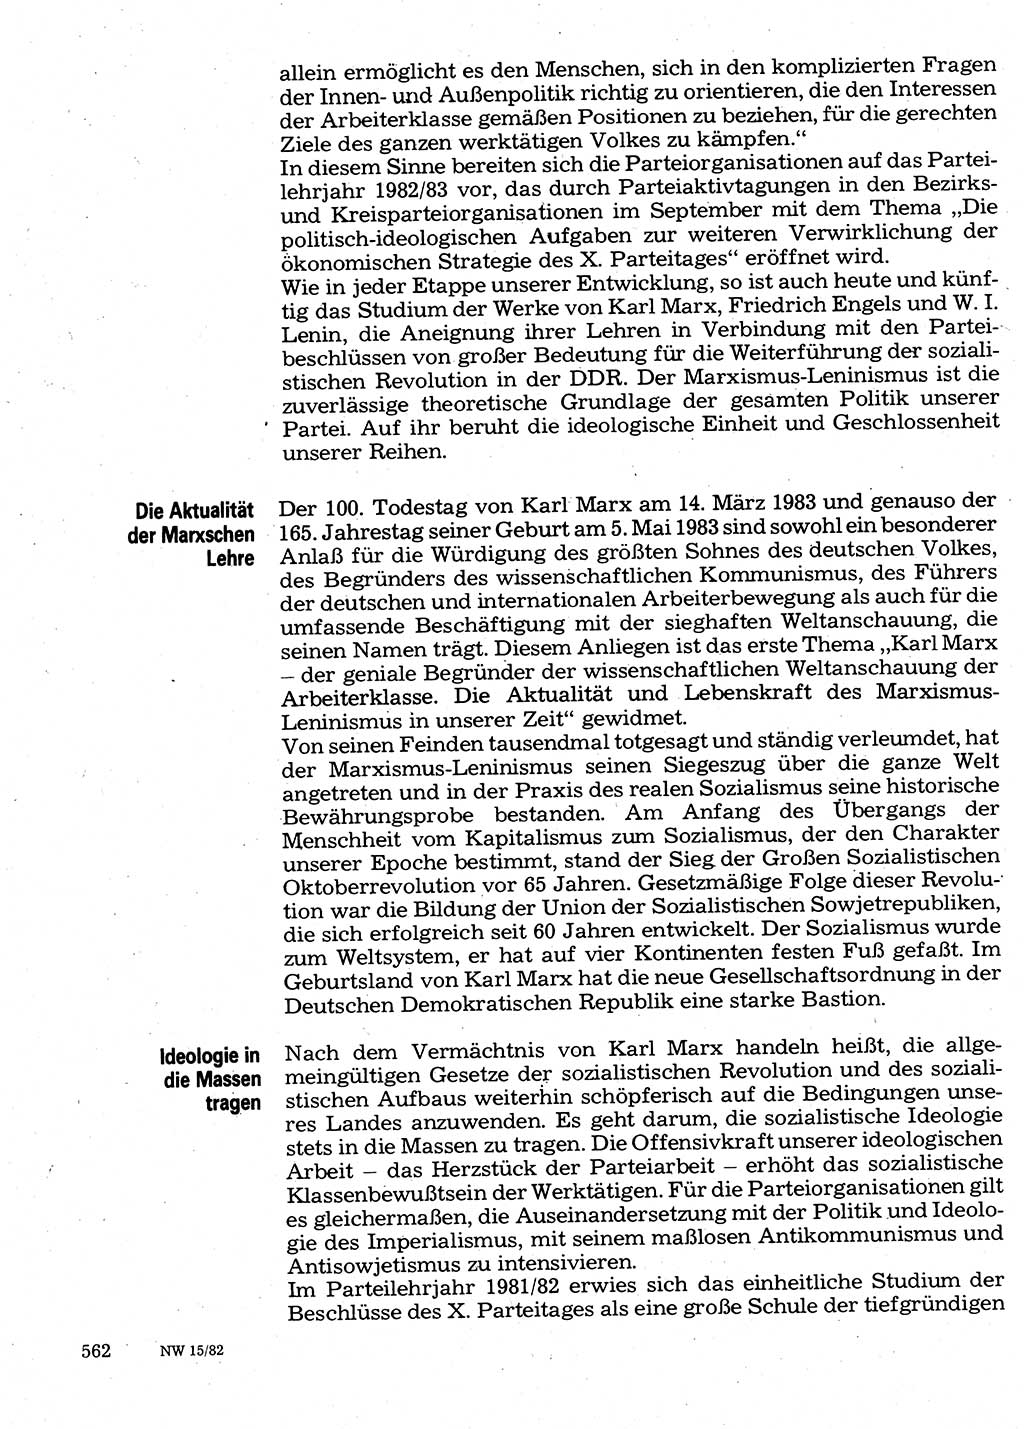 Neuer Weg (NW), Organ des Zentralkomitees (ZK) der SED (Sozialistische Einheitspartei Deutschlands) für Fragen des Parteilebens, 37. Jahrgang [Deutsche Demokratische Republik (DDR)] 1982, Seite 562 (NW ZK SED DDR 1982, S. 562)